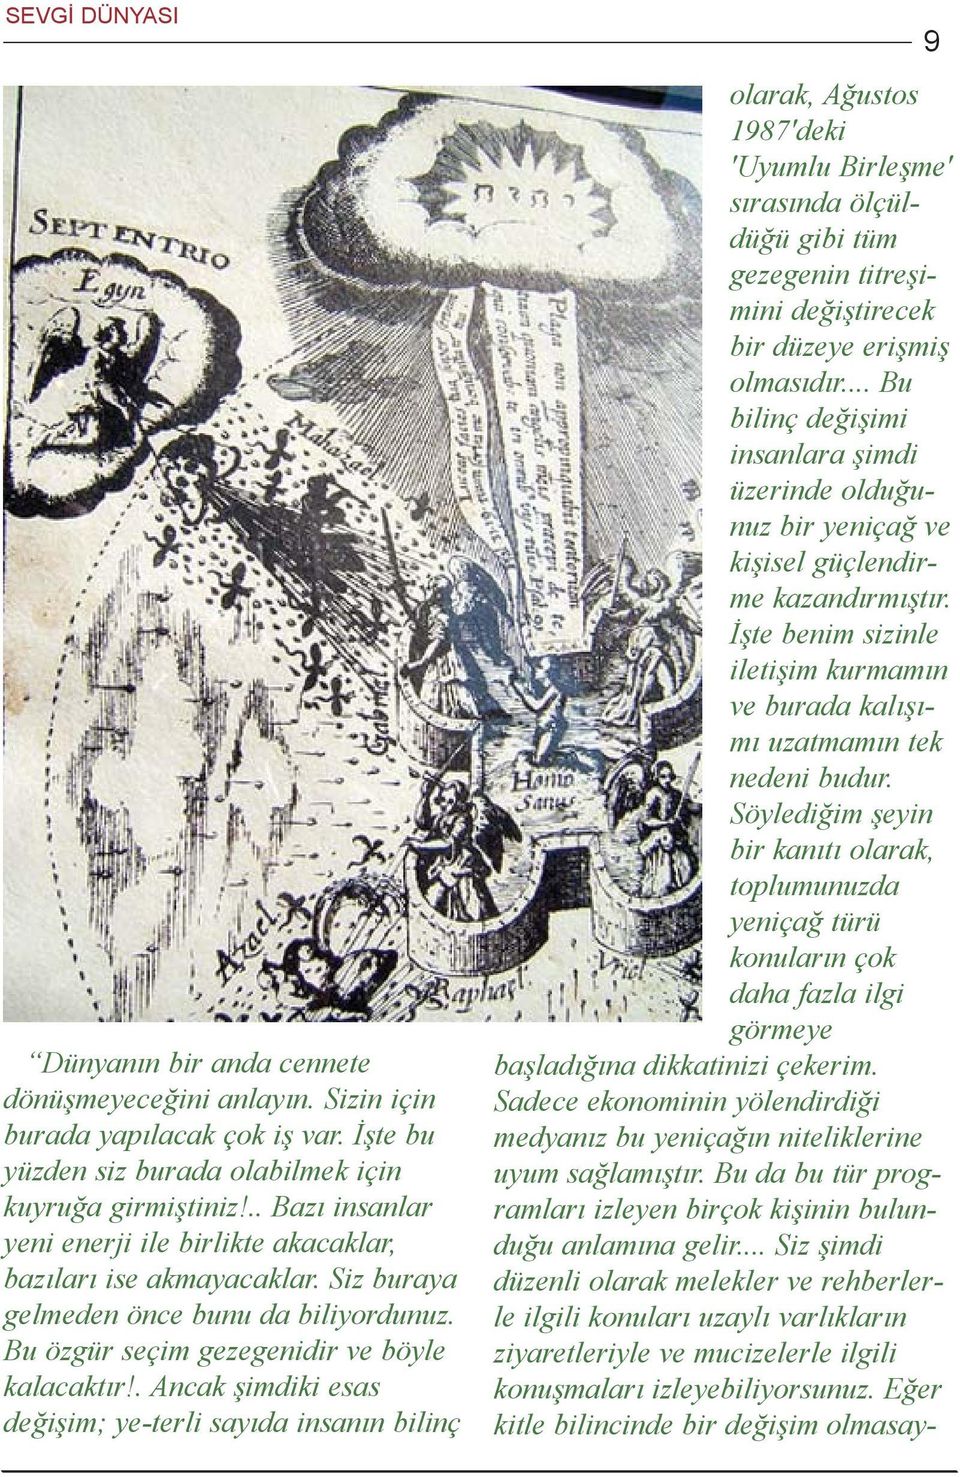 . Ancak þimdiki esas deðiþim; ye-terli sayýda insanýn bilinç 9 olarak, Aðustos 1987'deki 'Uyumlu Birleþme' sýrasýnda ölçüldüðü gibi tüm gezegenin titreþimini deðiþtirecek bir düzeye eriþmiþ olmasýdýr.